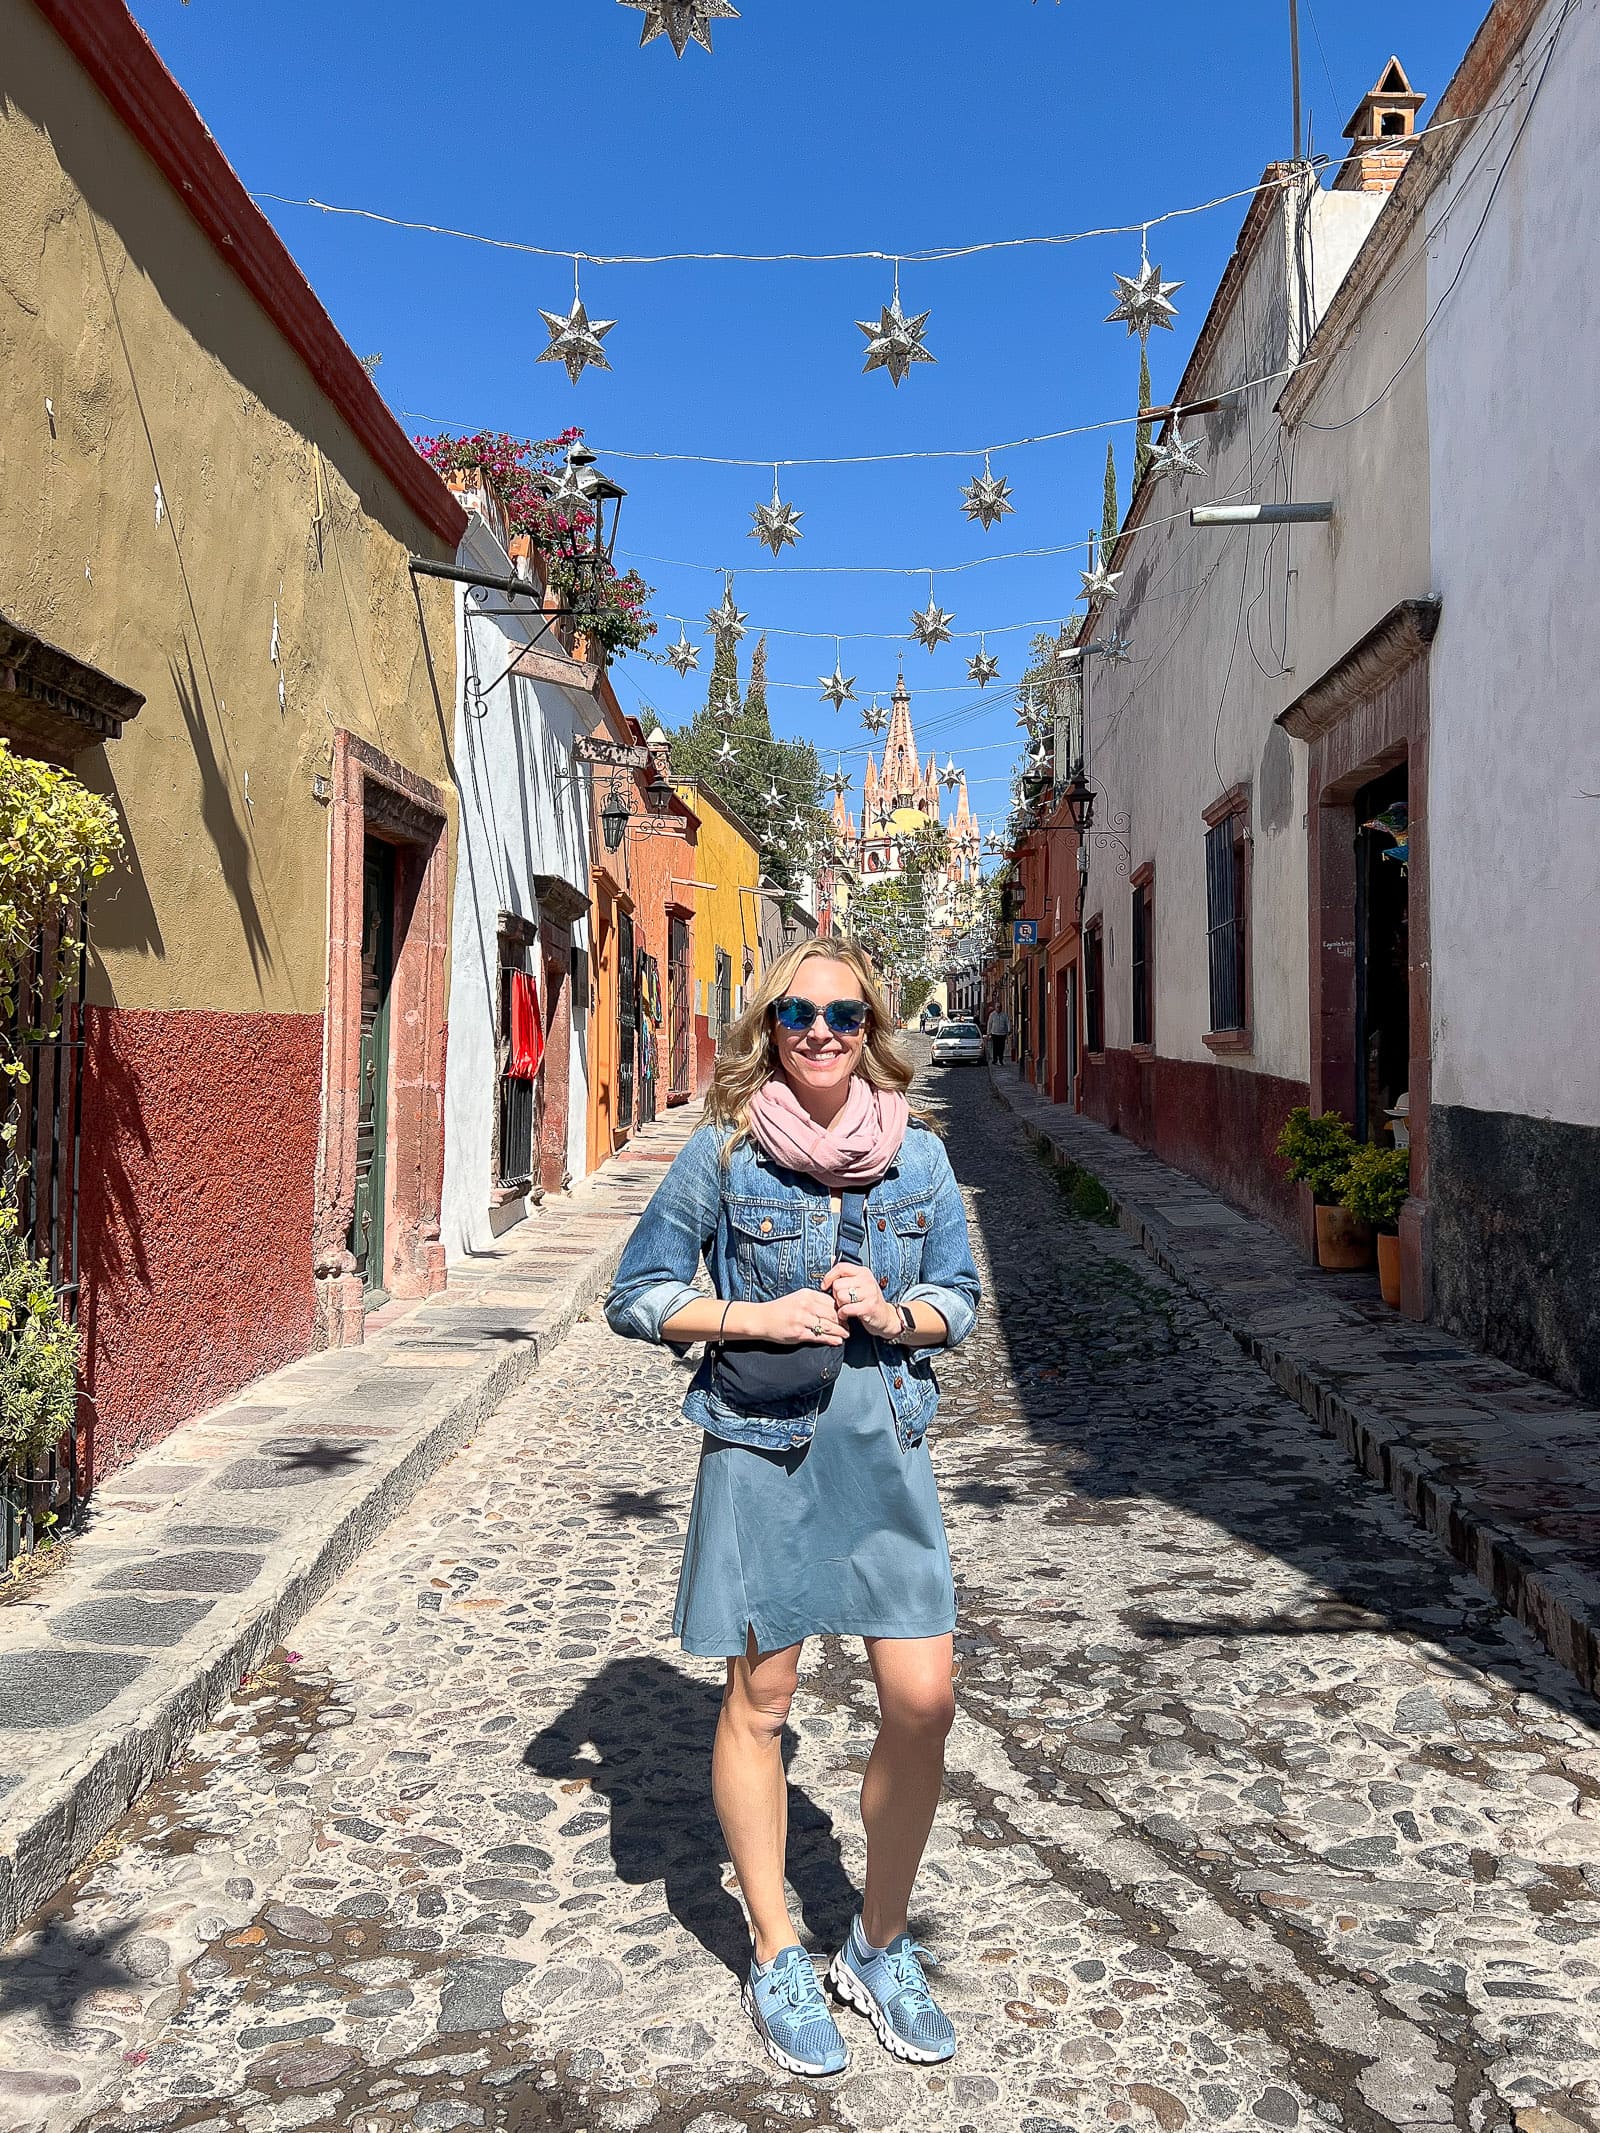 My trip to San Miguel de Allende